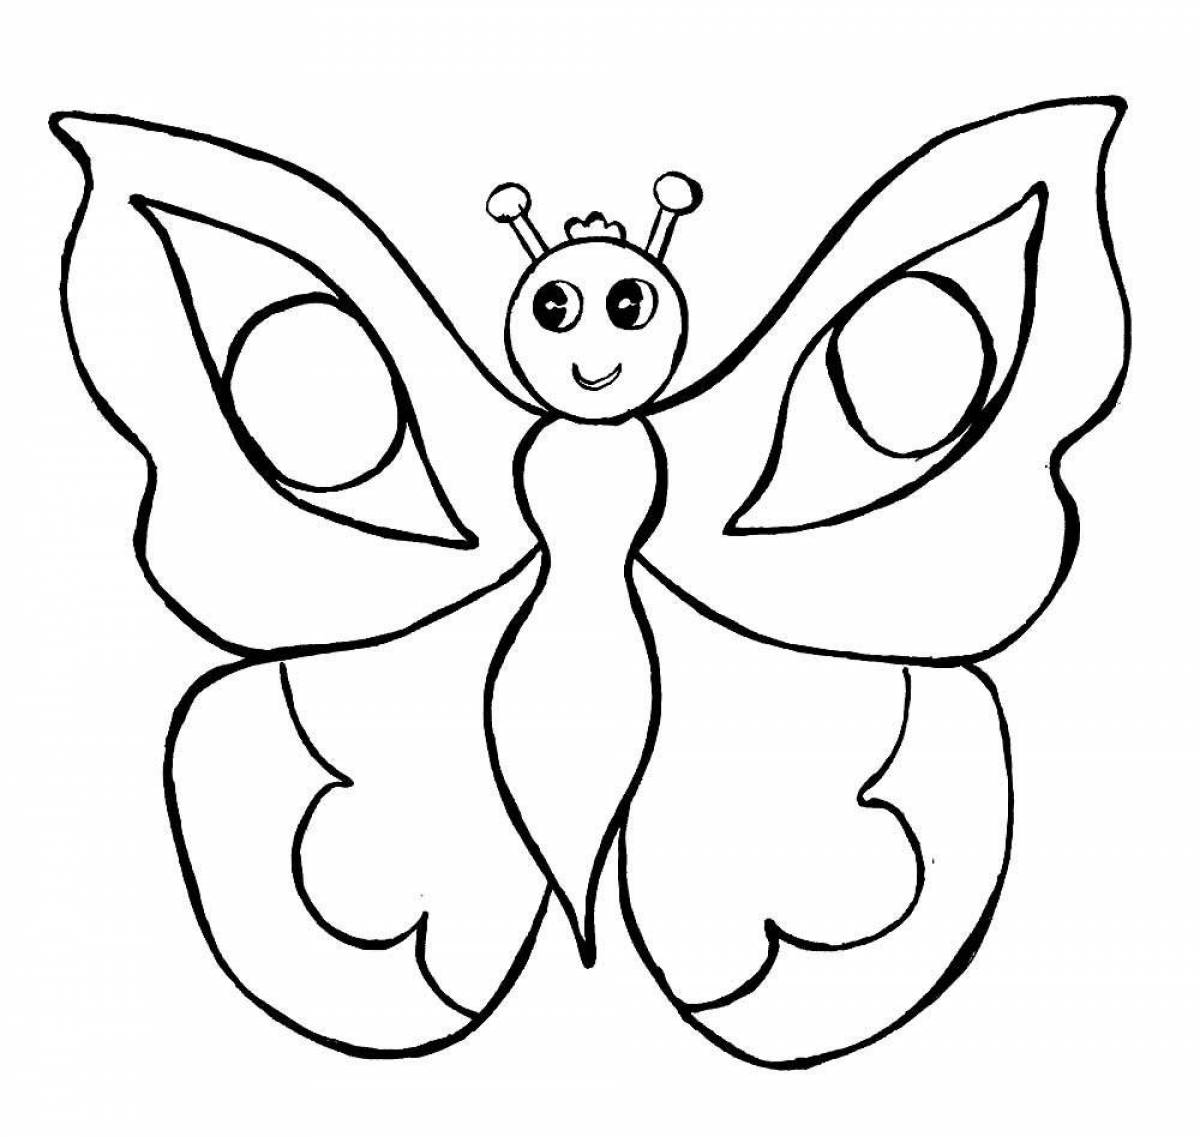 Сказочная бабочка-раскраска для детей 6-7 лет